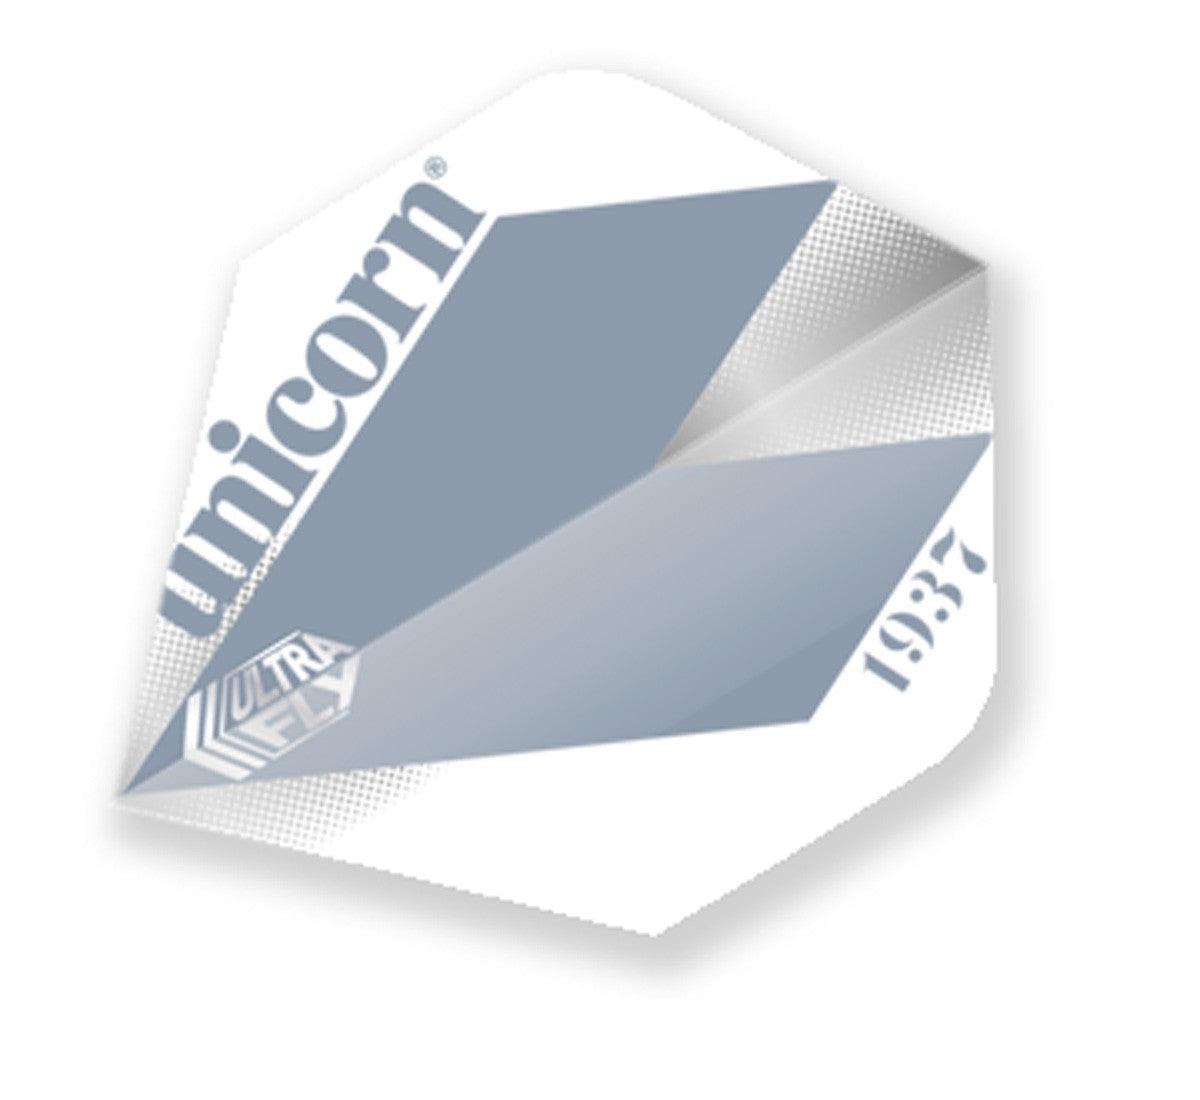 Unicorn Classic Dart Flight - Comet Silver-Dart Flights-Pro Sports